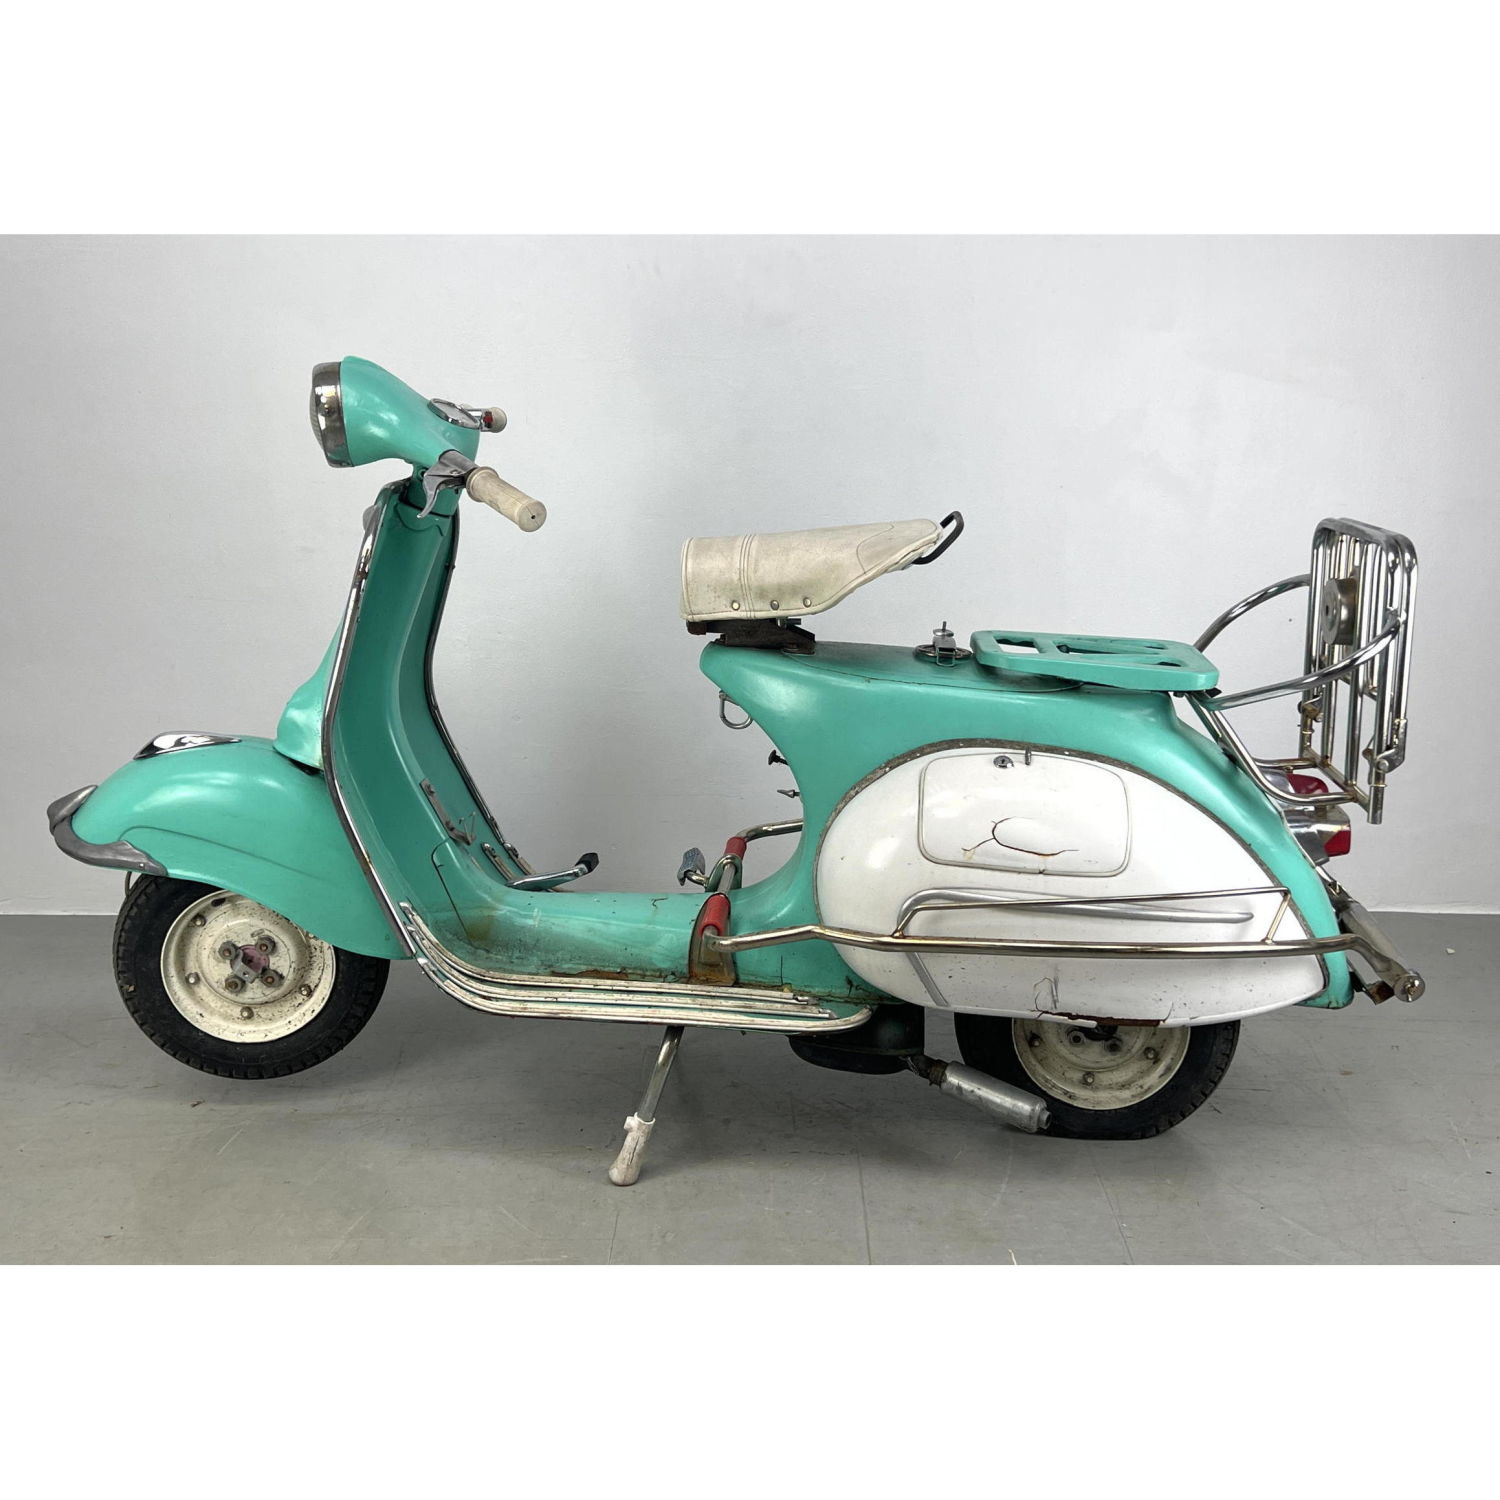 1962 Piaggio scooter Vespa style  2b96c7